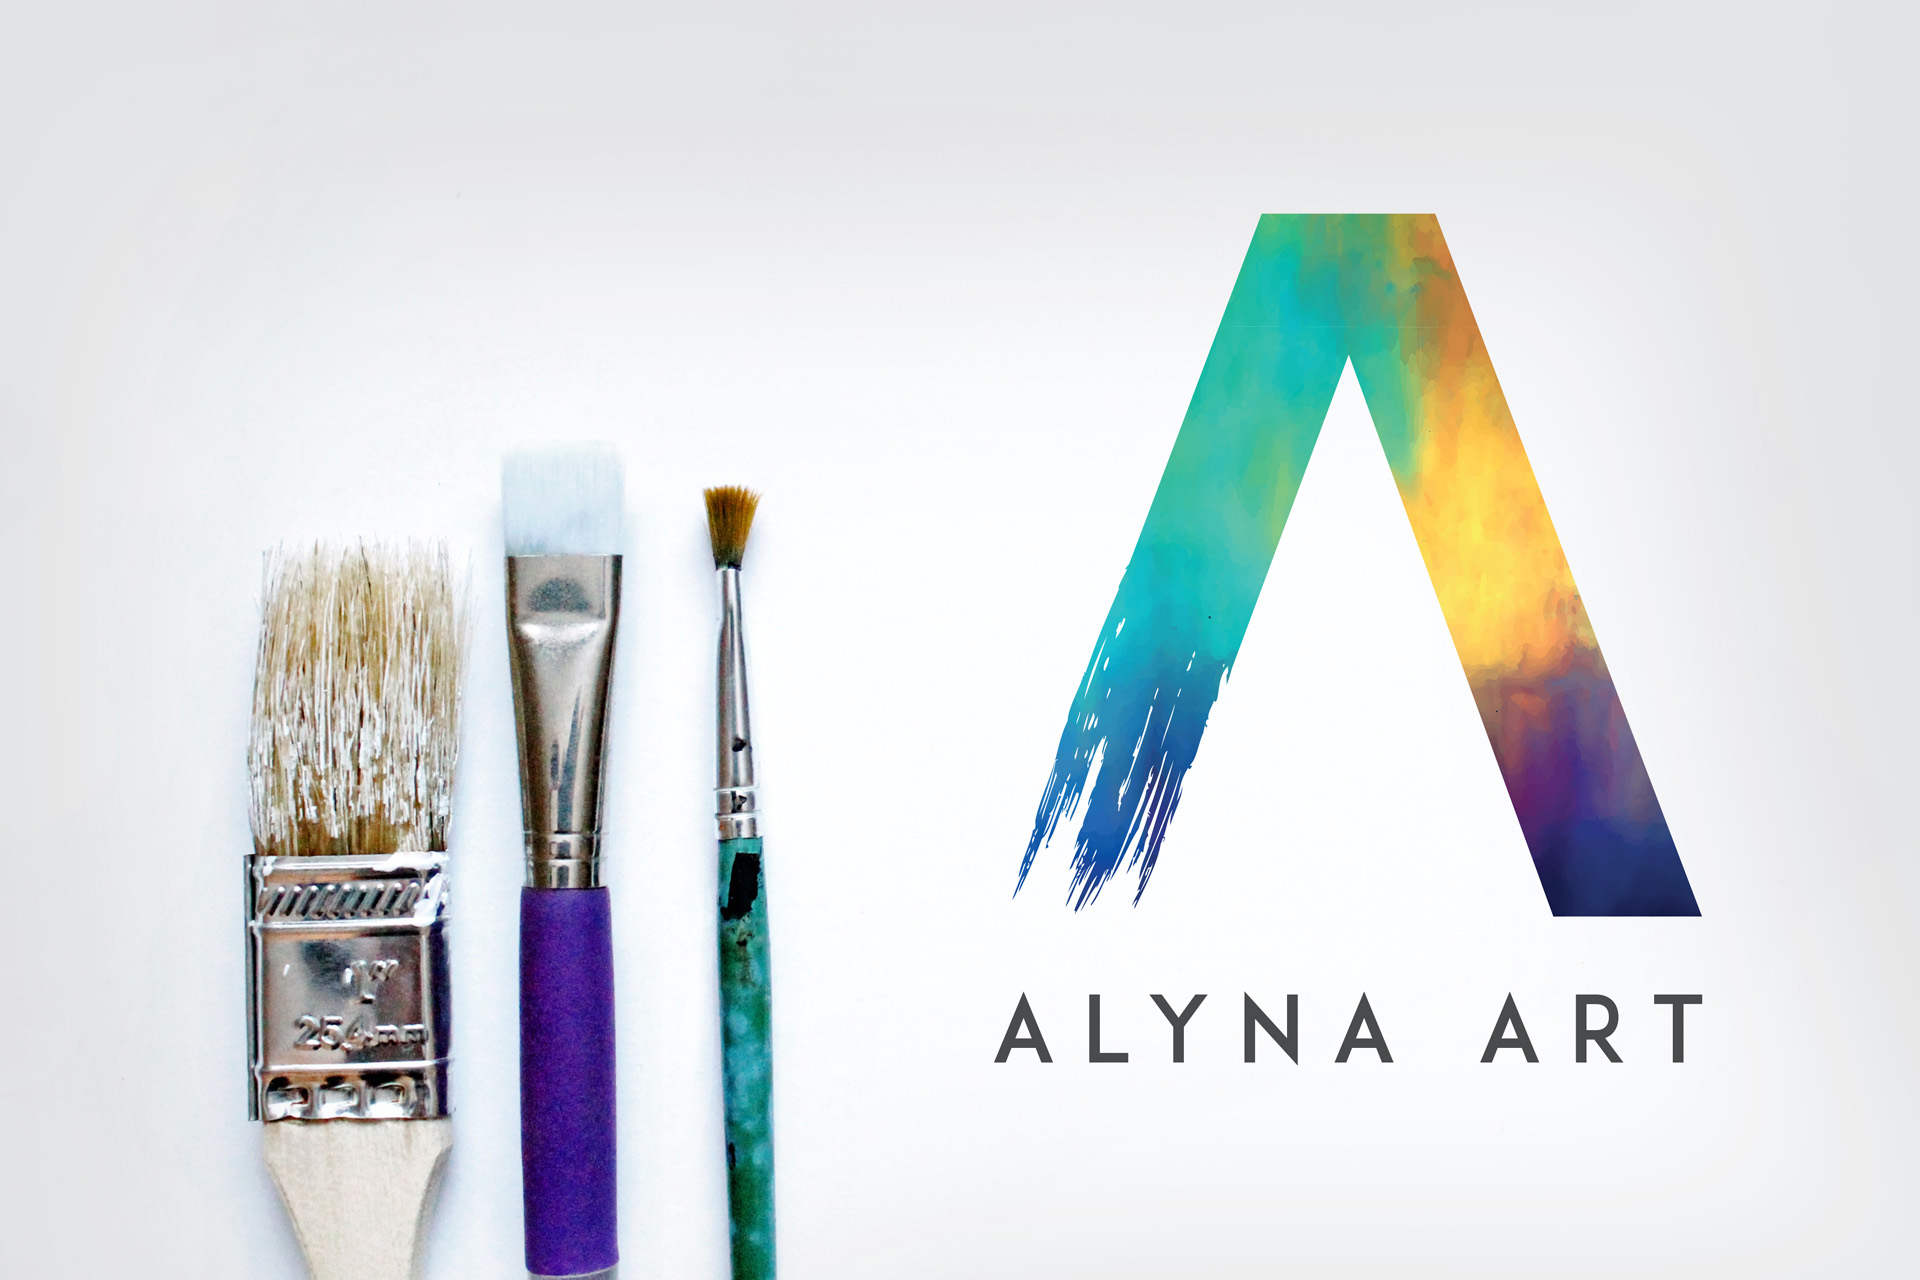 Alyna art logo design